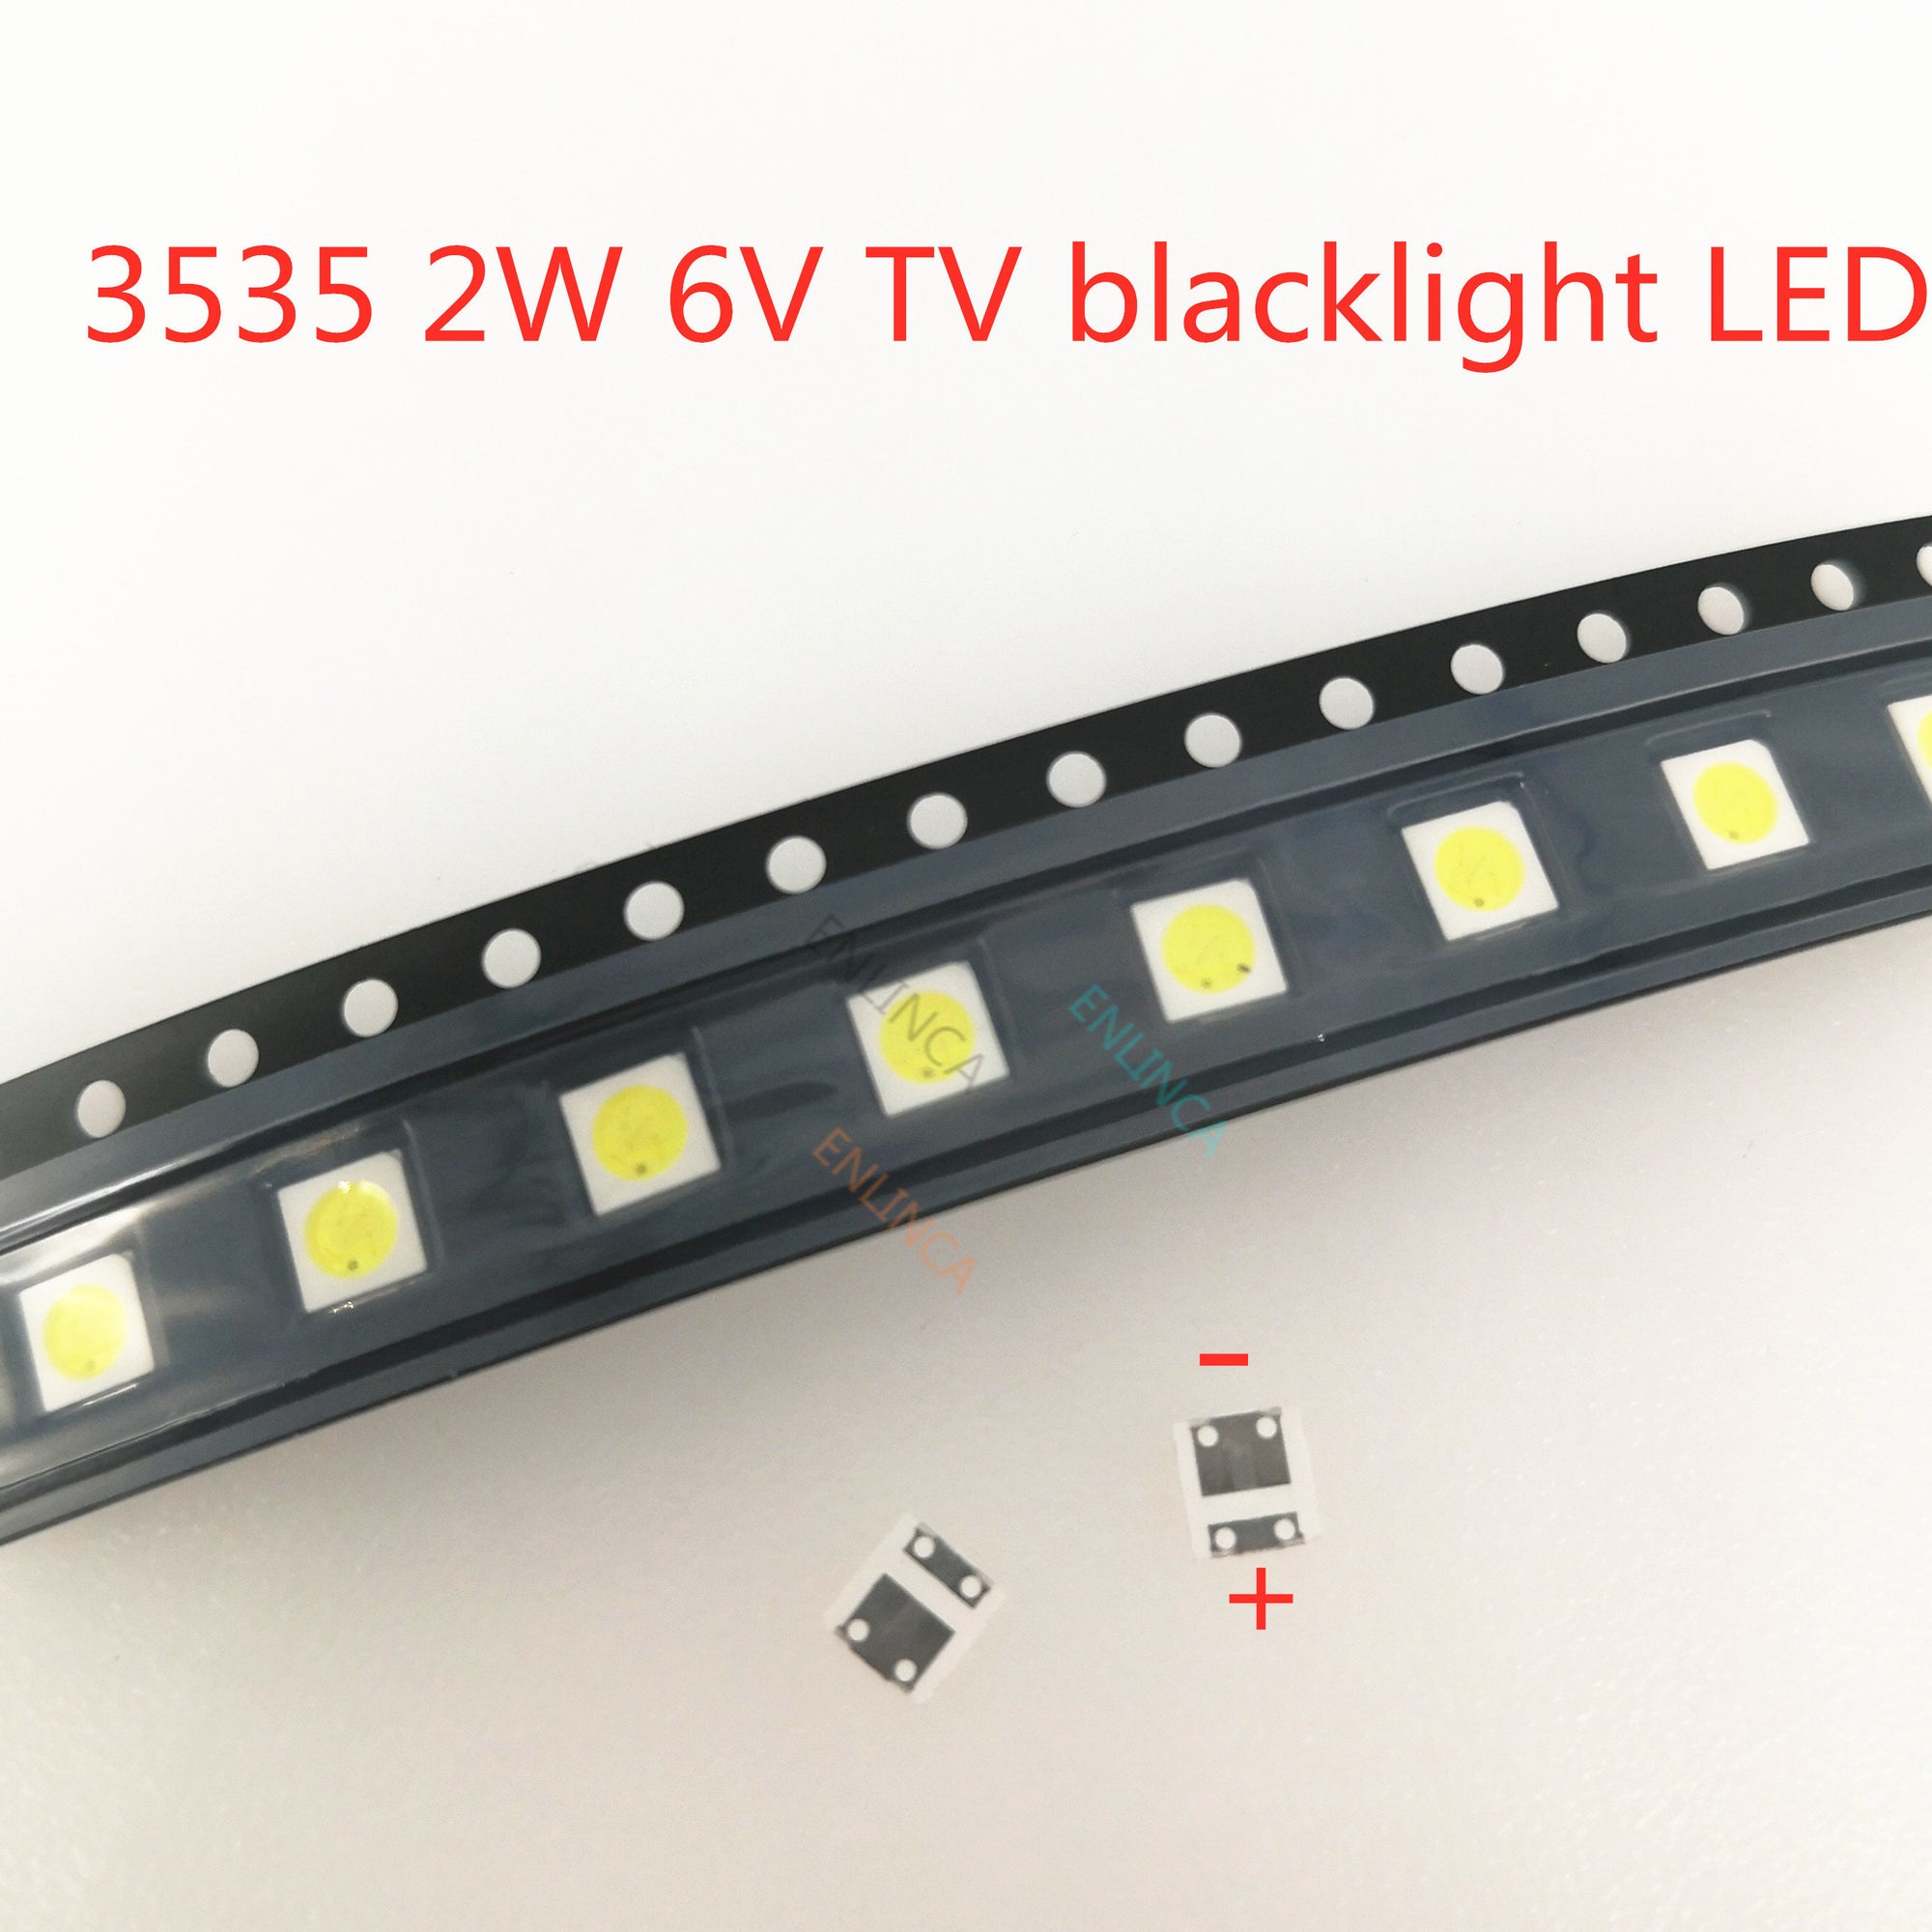 50-1000PCS 2W 6V 3V 1W 3535 SMD LED Replace LG Innotek  LCD TV Back Light Beads TV Backlight Diode Repair Application